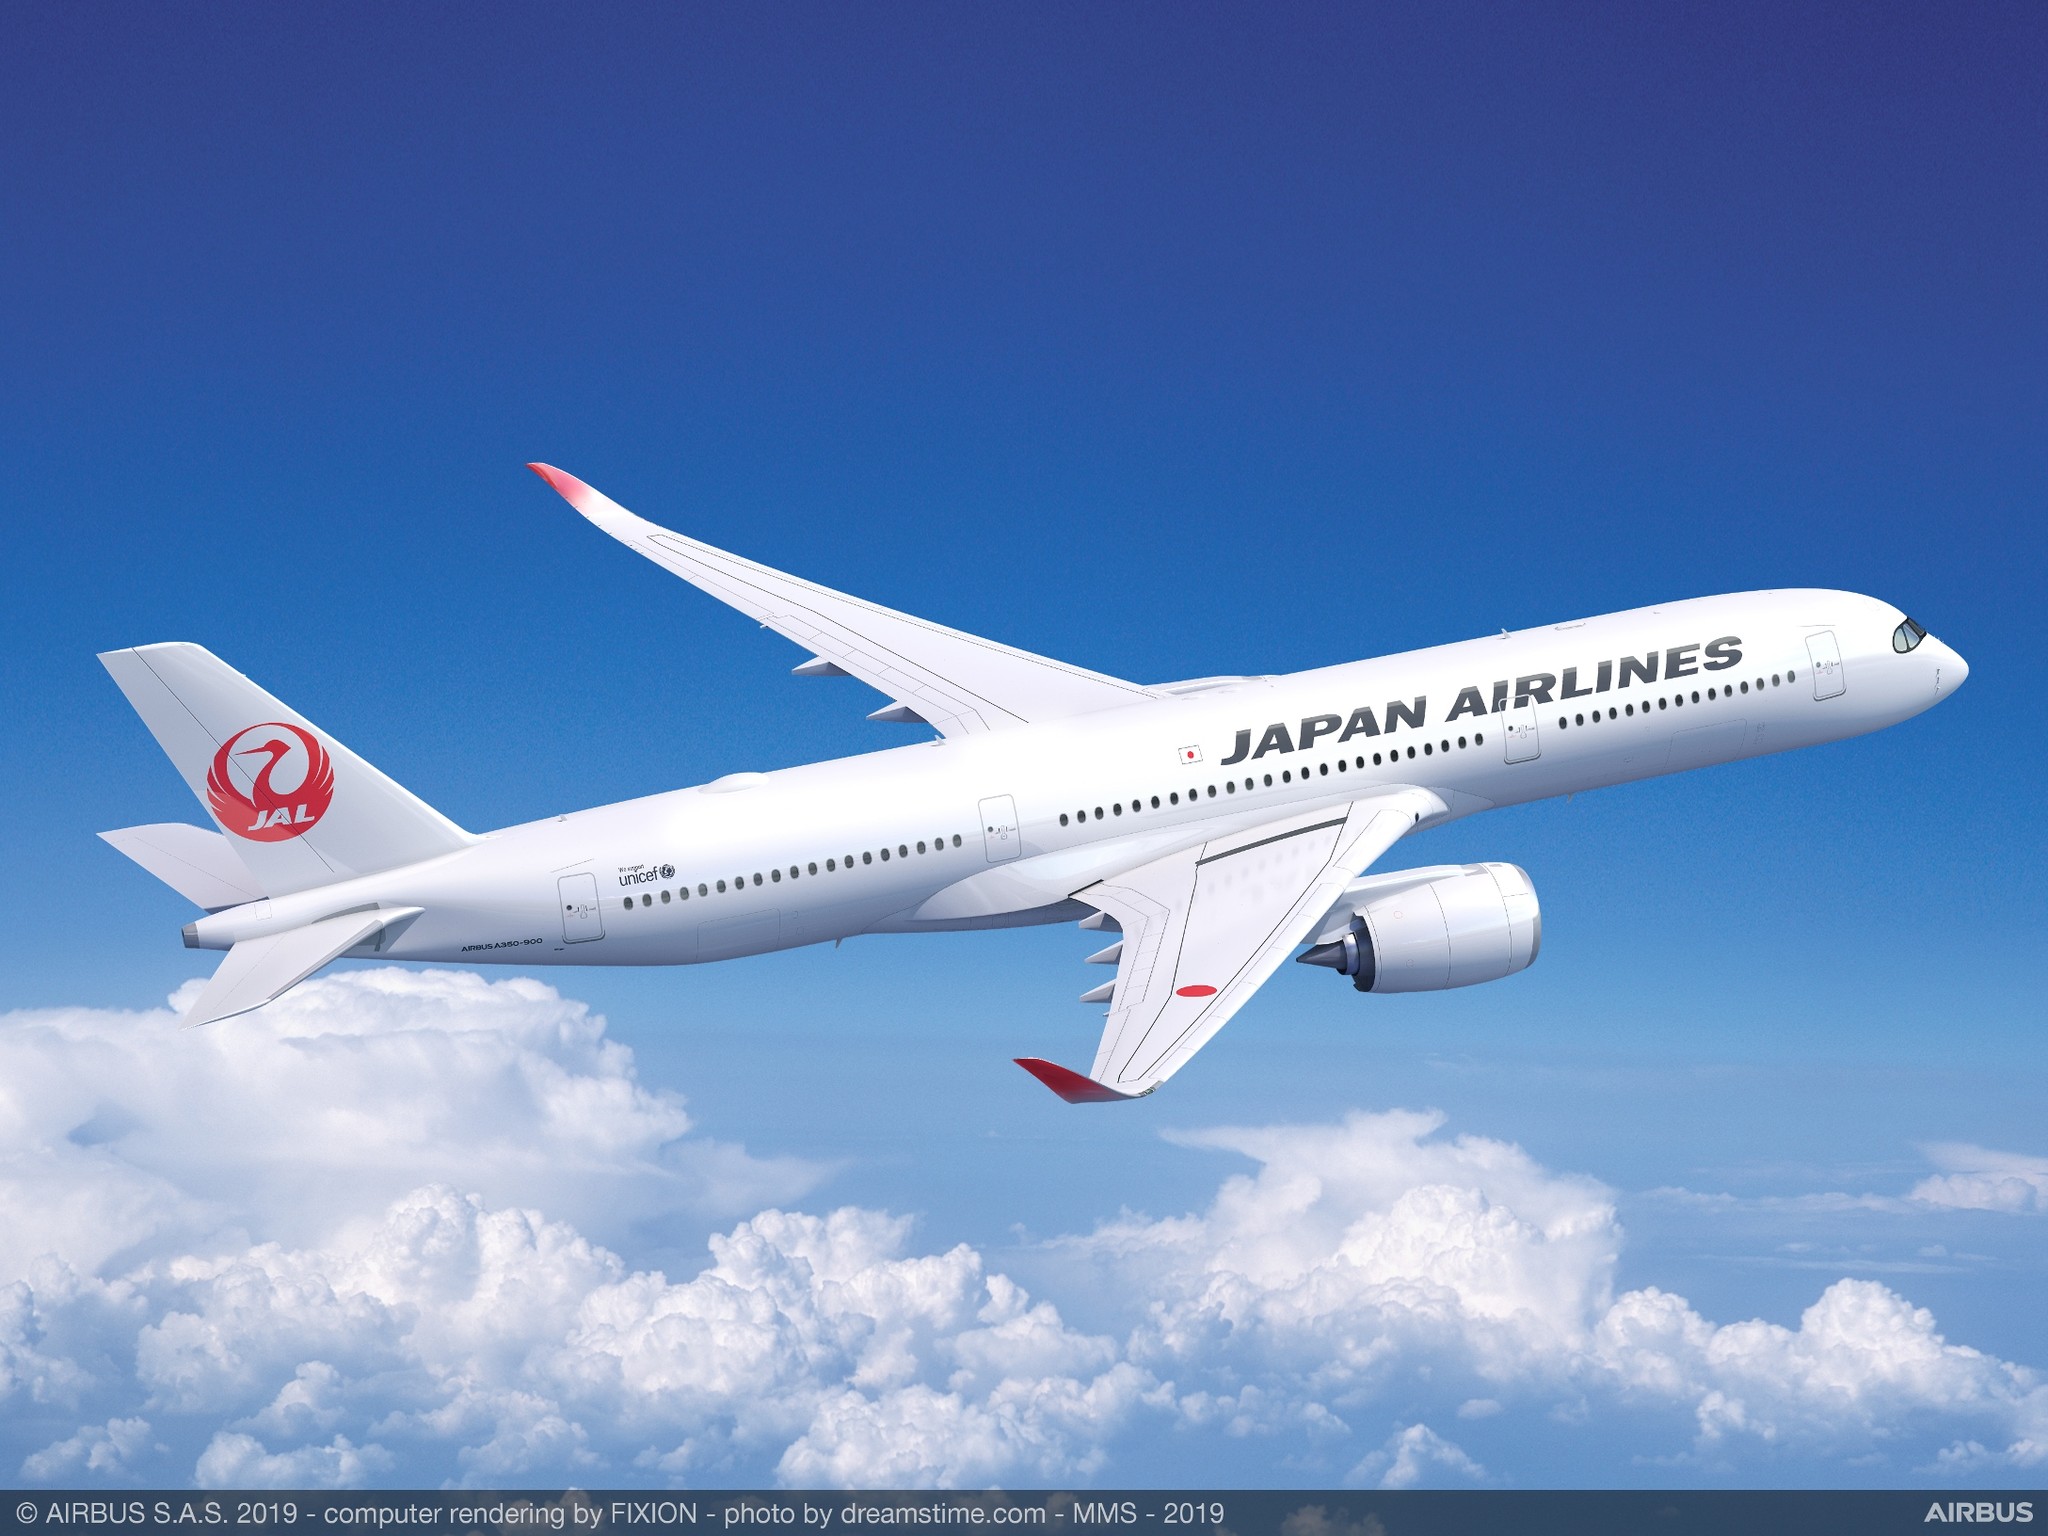 新型機エアバスa350 900 9月1日東京 羽田 福岡線就航 日本航空株式会社のプレスリリース